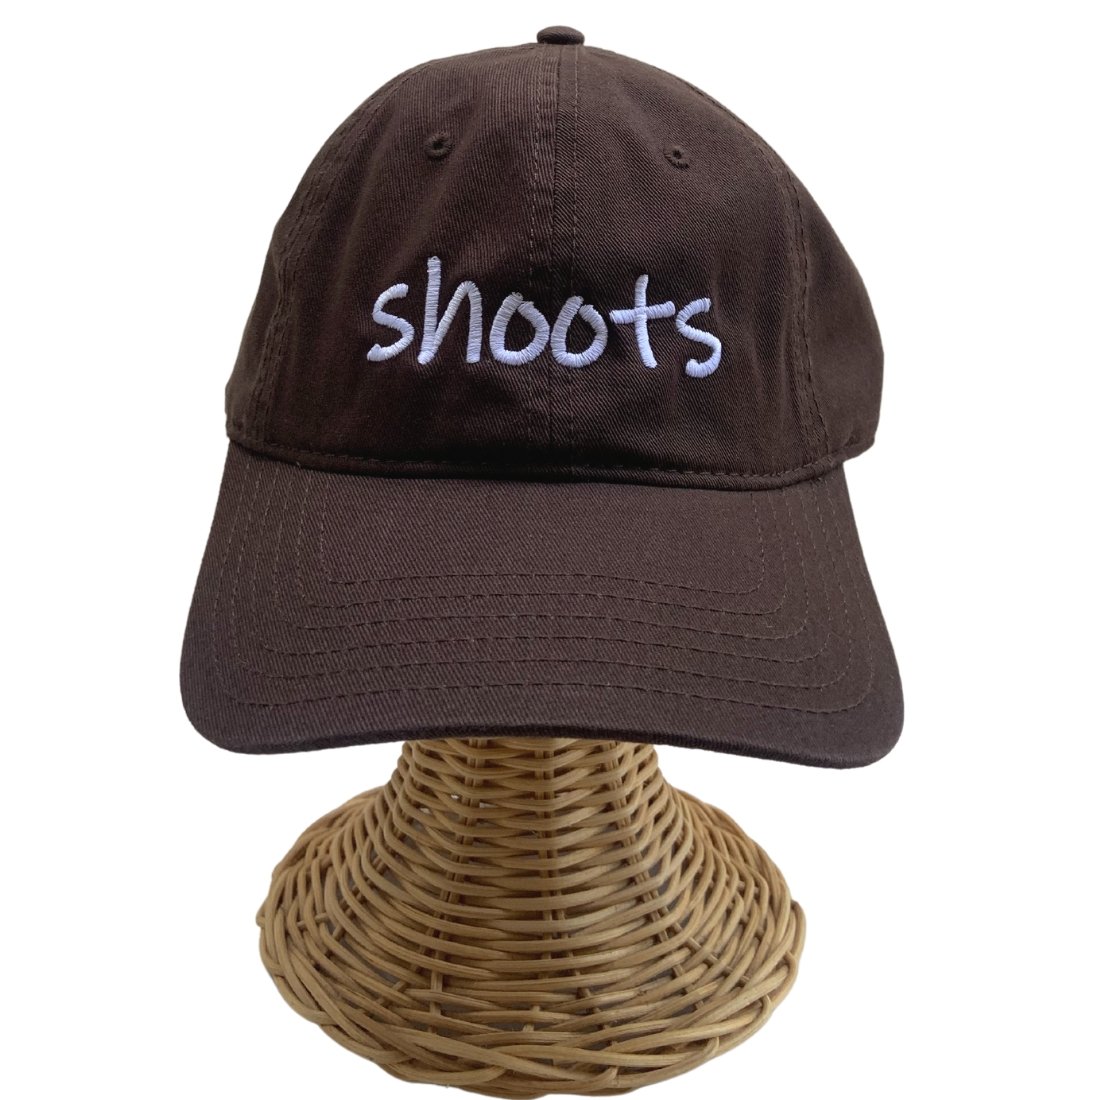 Dad Hat Shoots Global Village Kailua Boutique